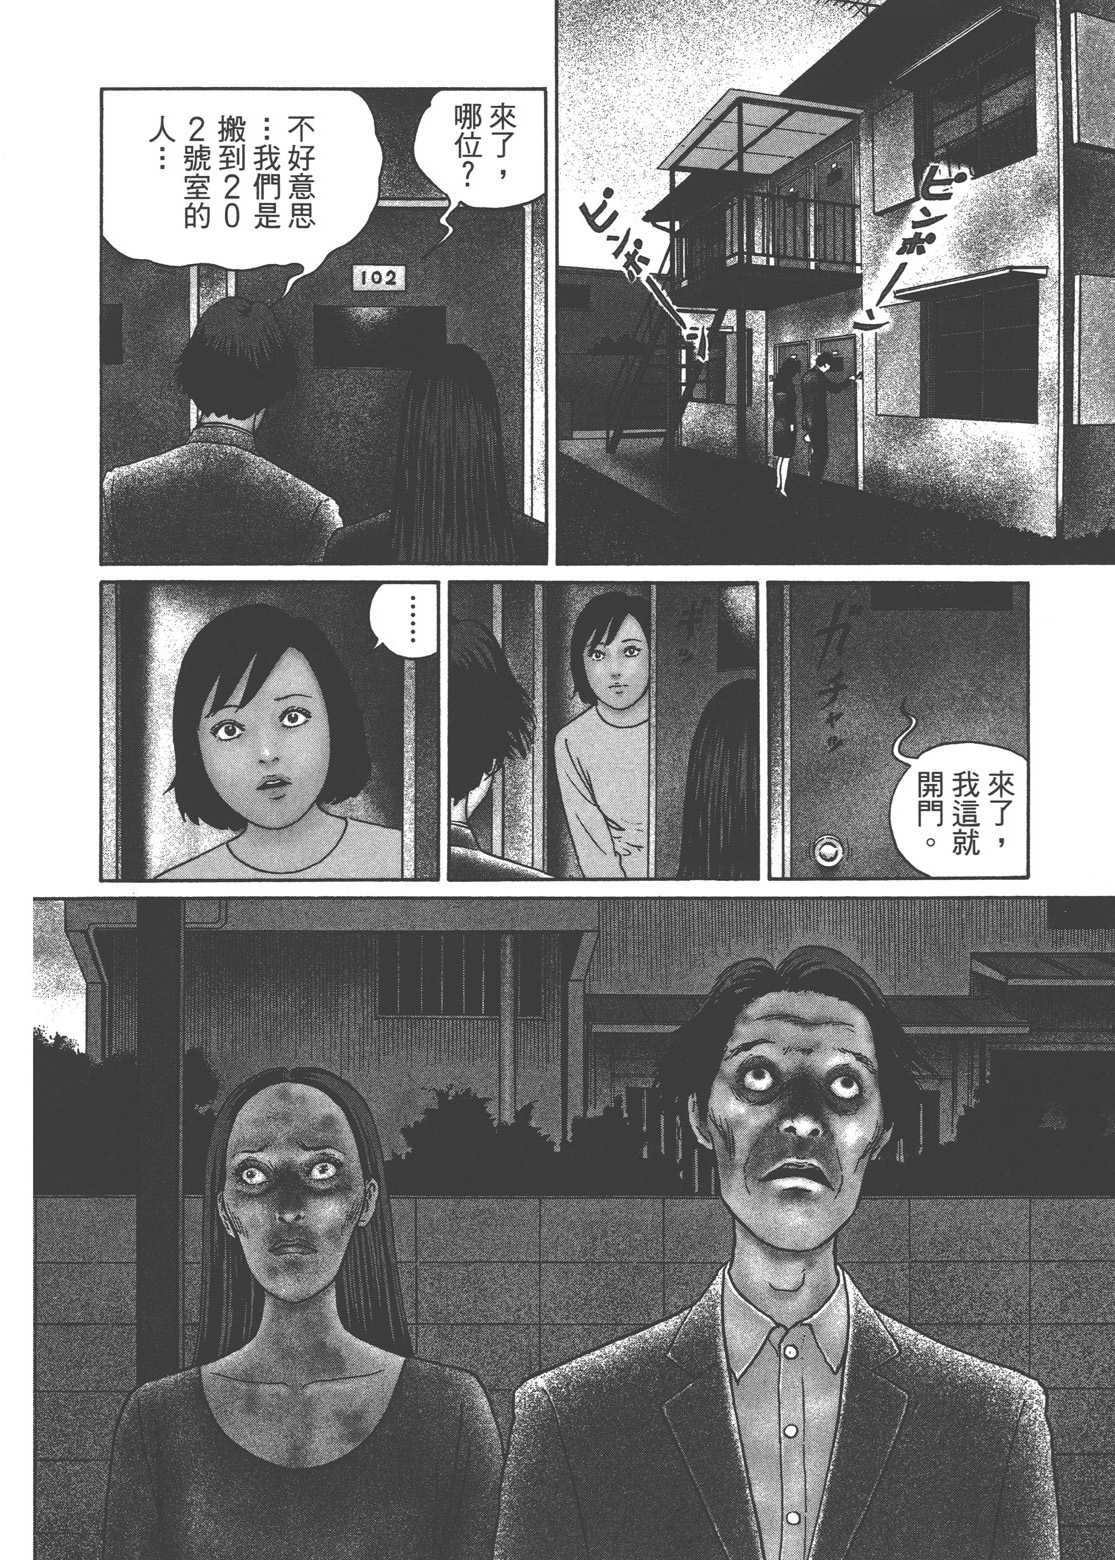 【恐怖漫画】伊藤润二作品《地狱星》第一话《可怕的星球》 - 知乎